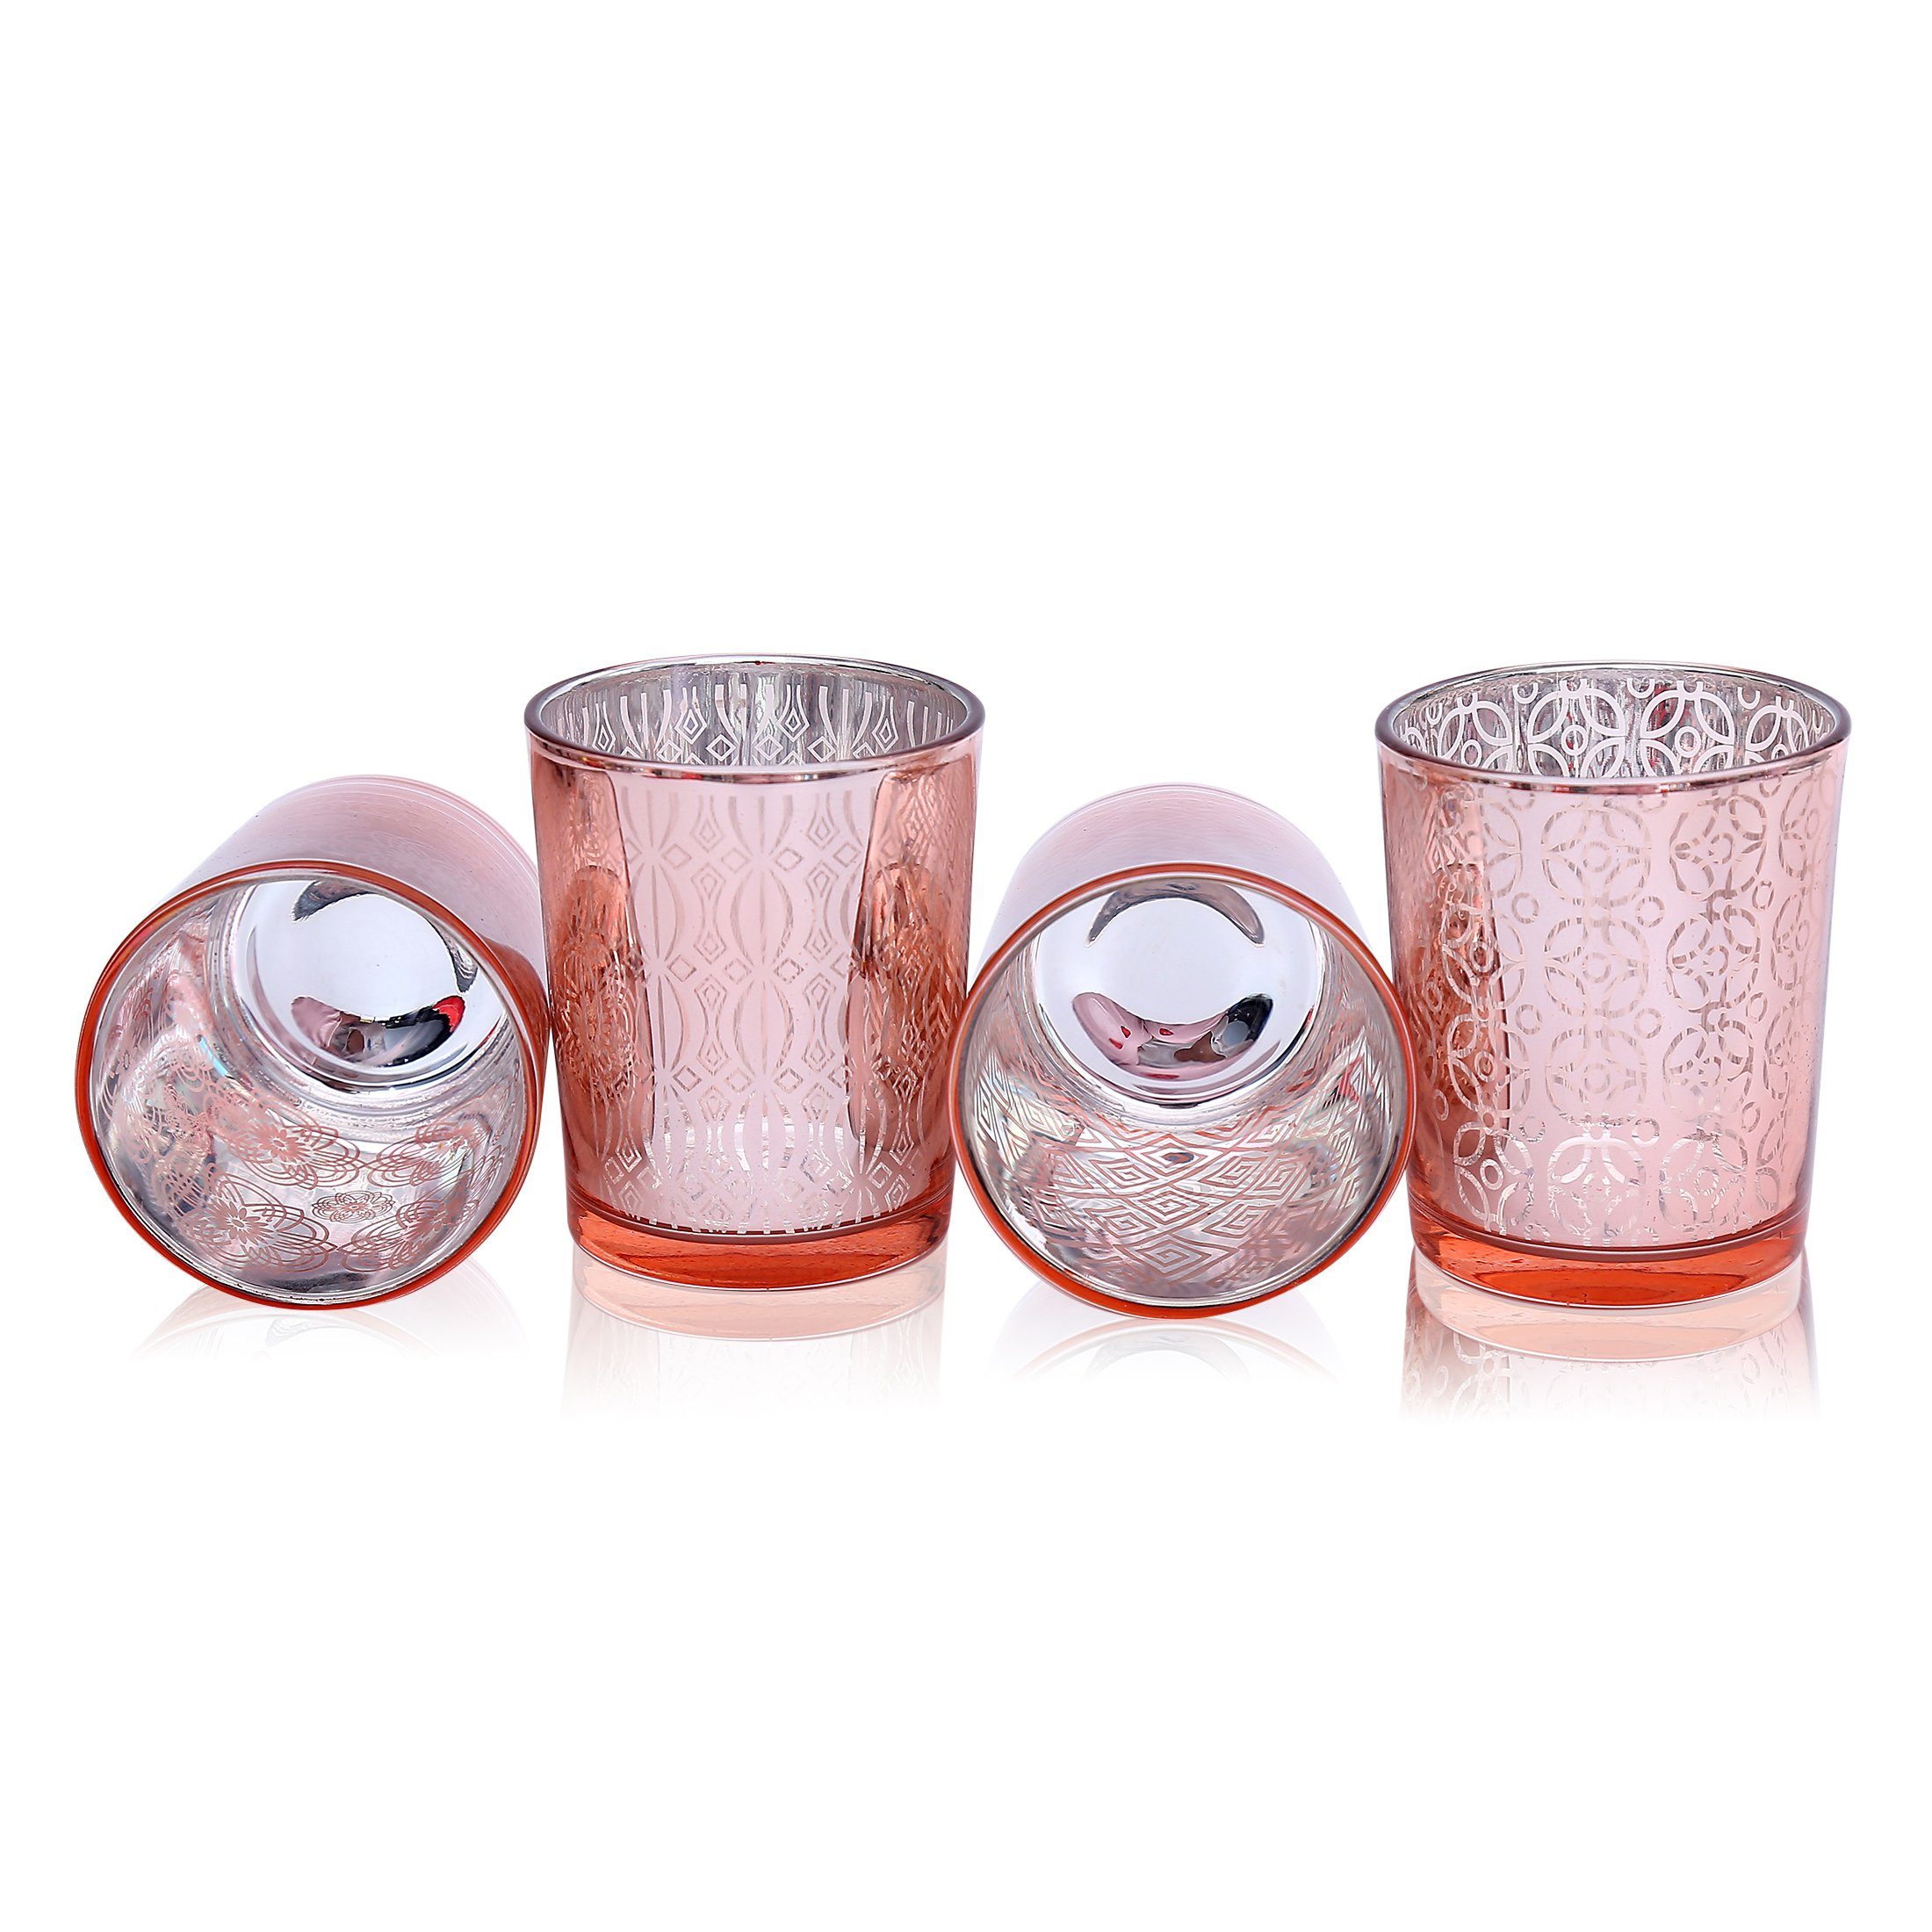 Flanacom Orientalische Kerzengläser - Teelichthalter Set), orientalisches Glas Design Ornament-Design (4er